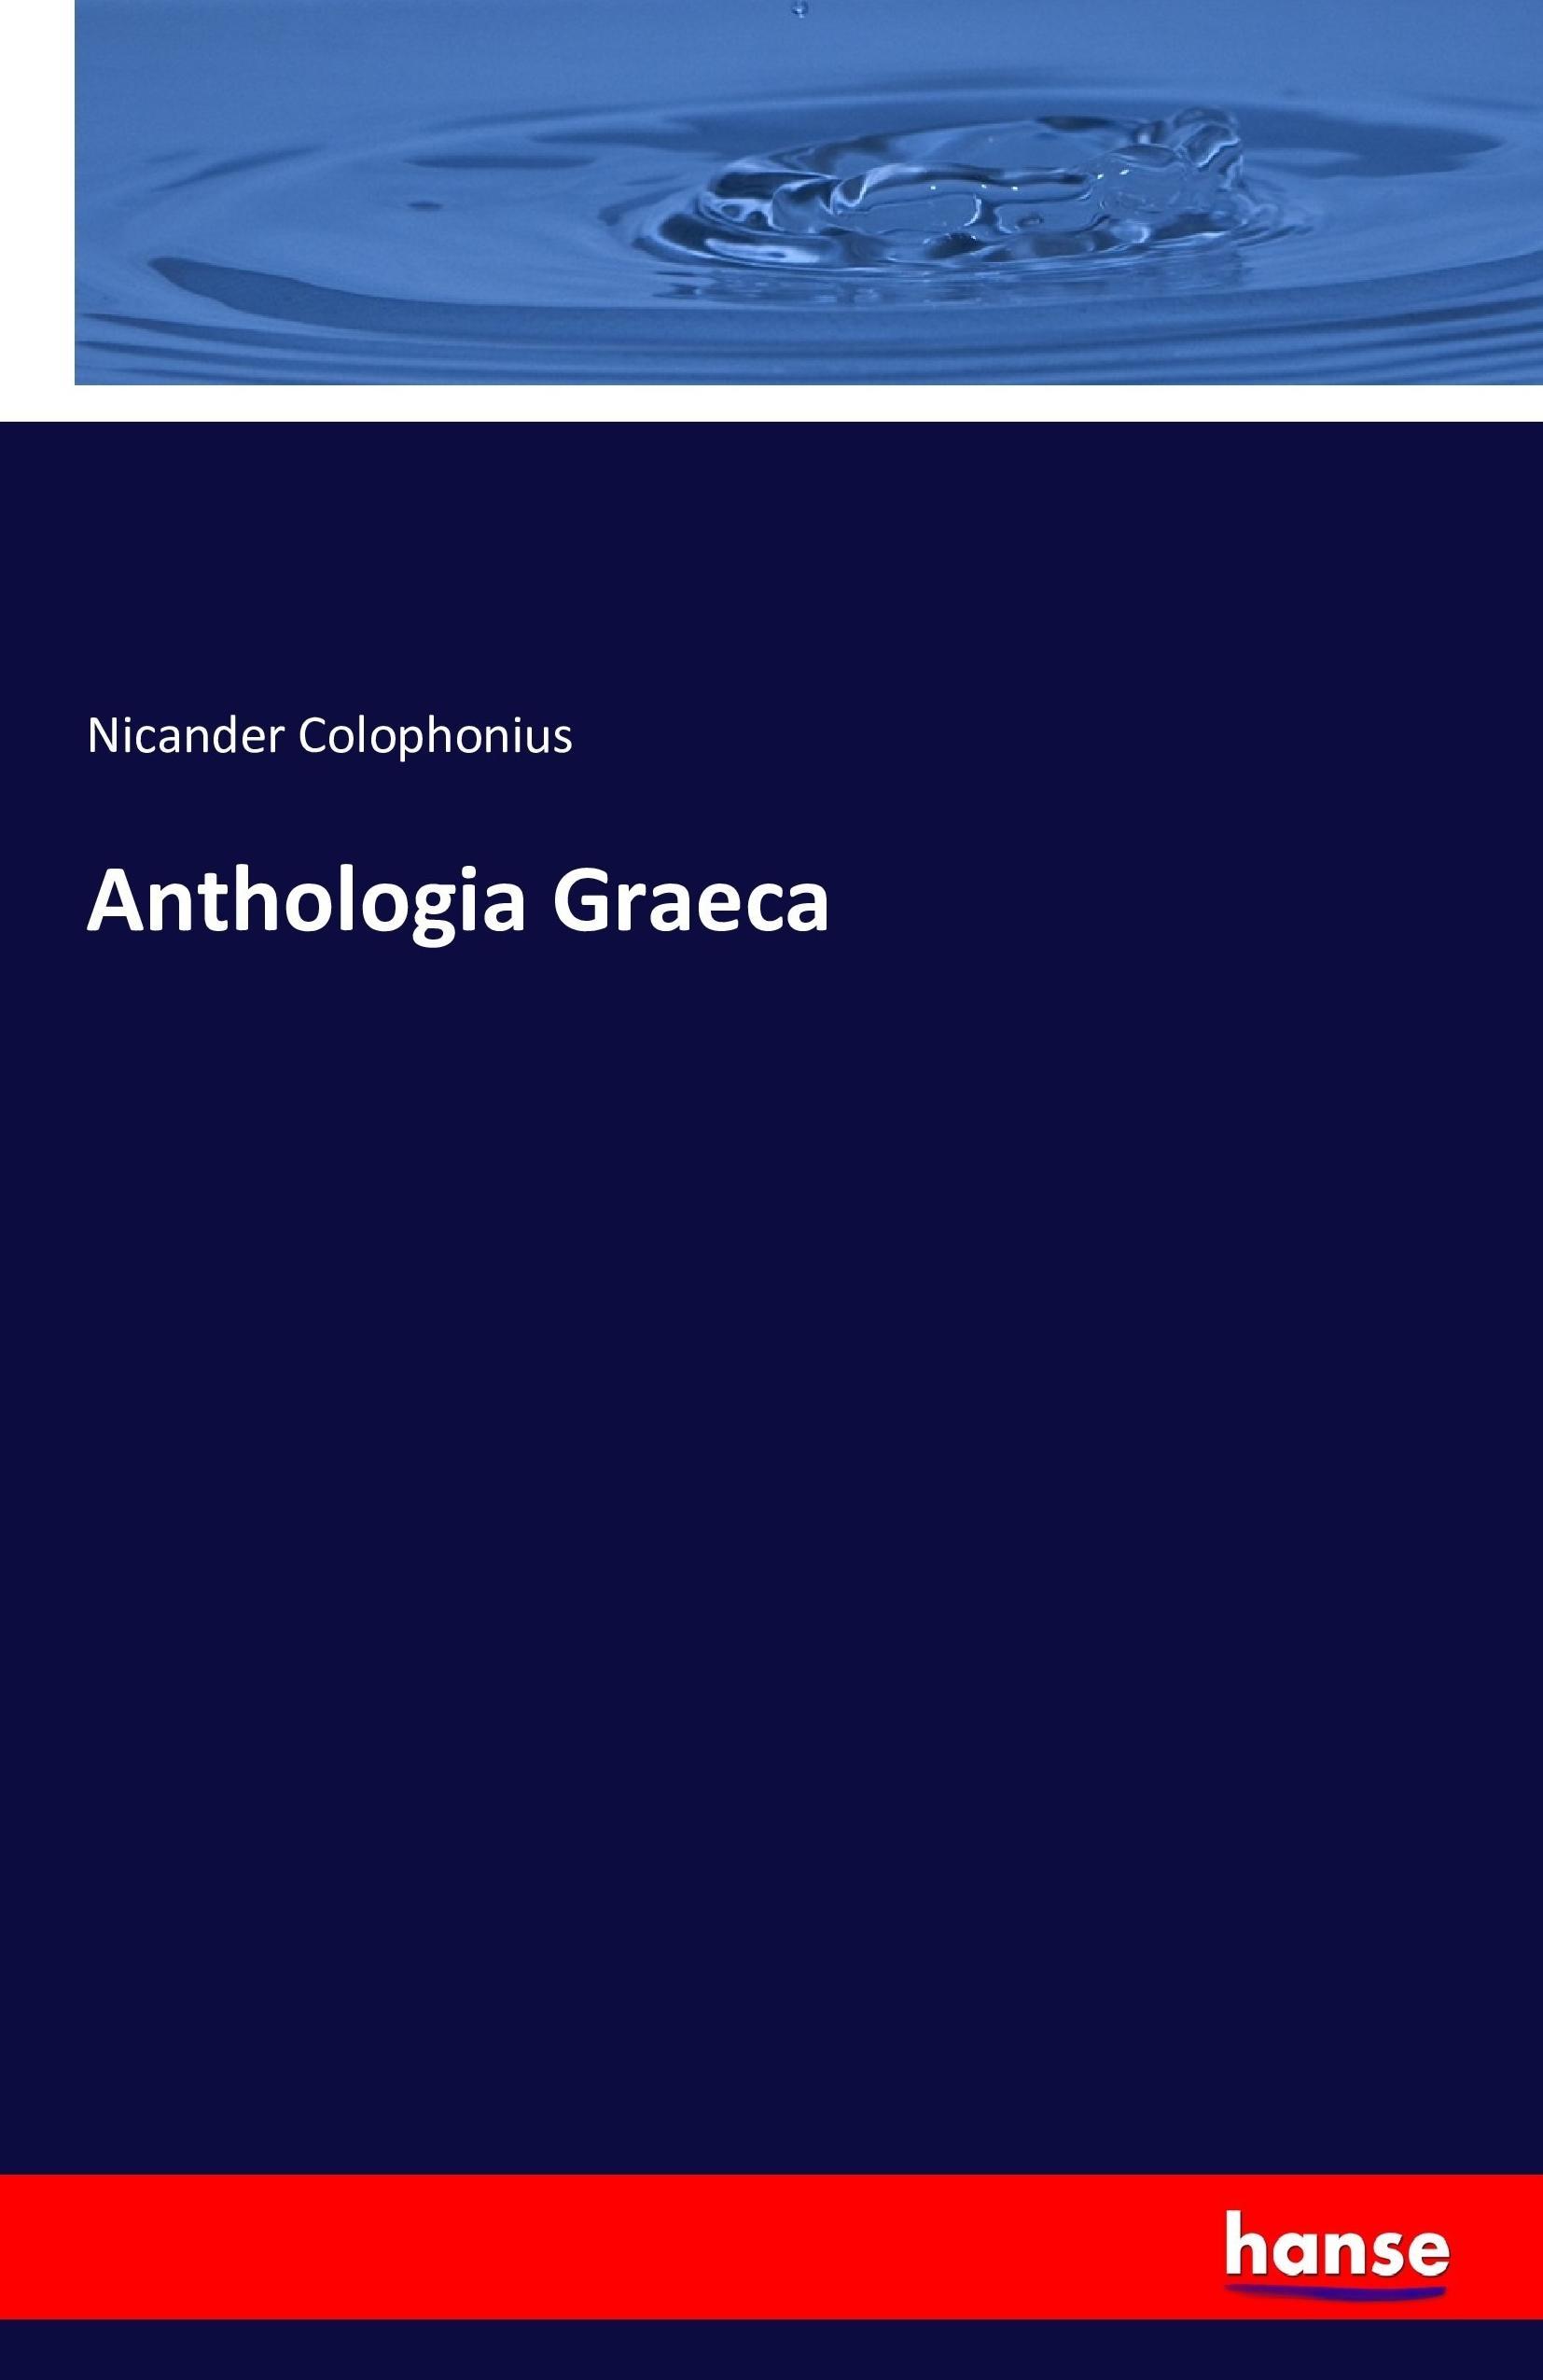 Anthologia Graeca - Colophonius, Nicander